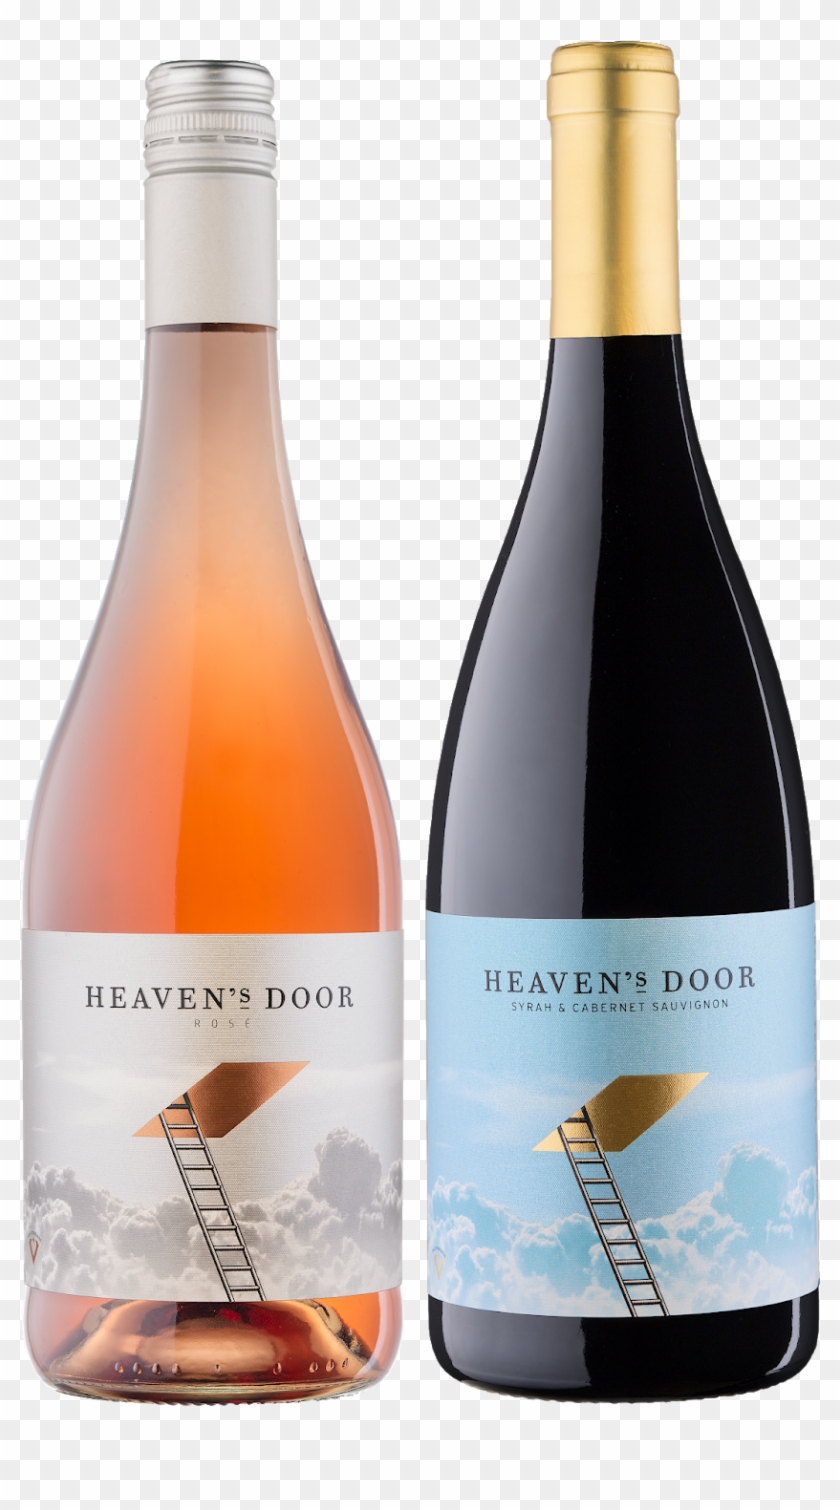 Heaven's Door Wines On Packaging Of The World - Heavens Door Wine Clipart #3475913